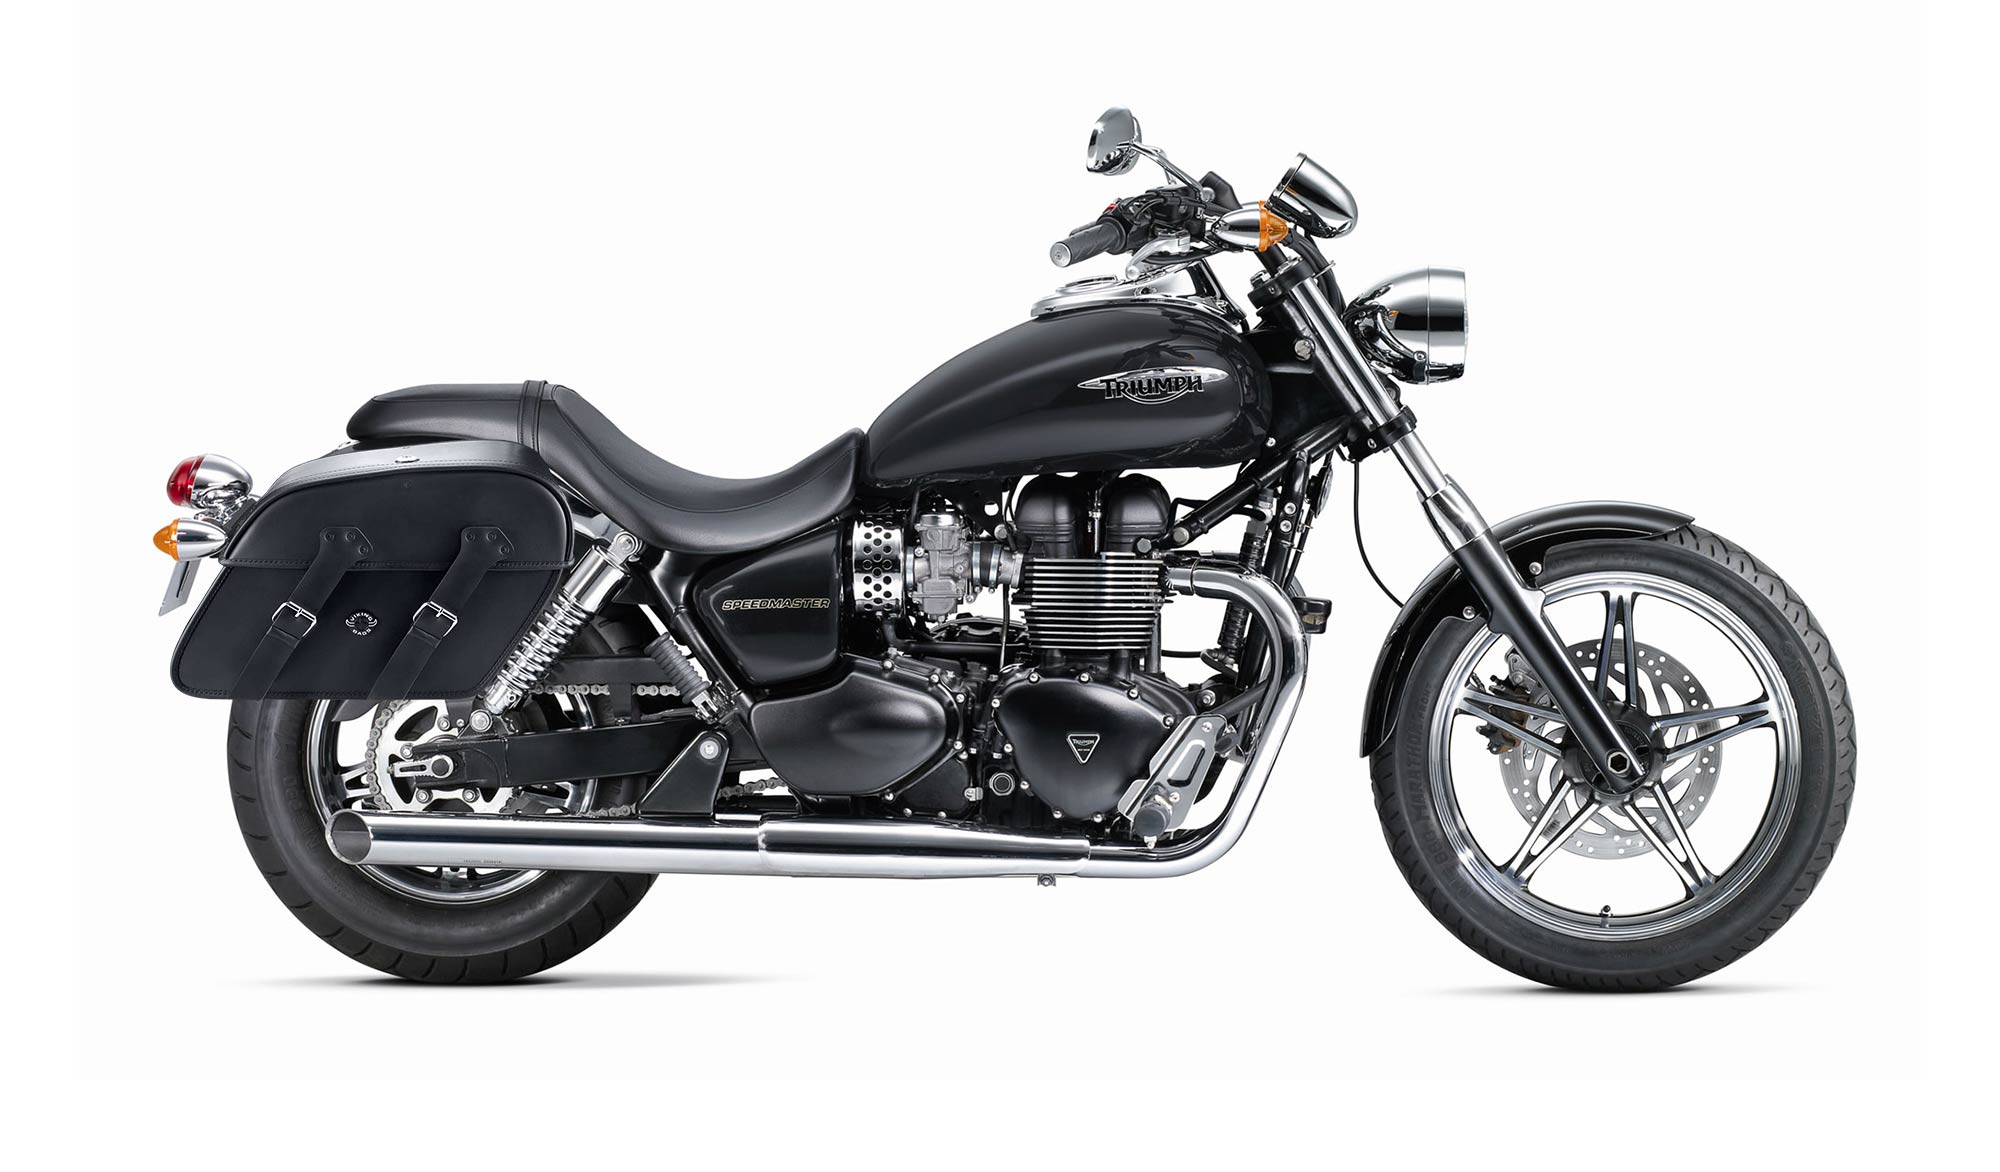 Viking Raven Extra Large Triumph Speedmaster Leather Motorcycle Saddlebags on Bike Photo @expand